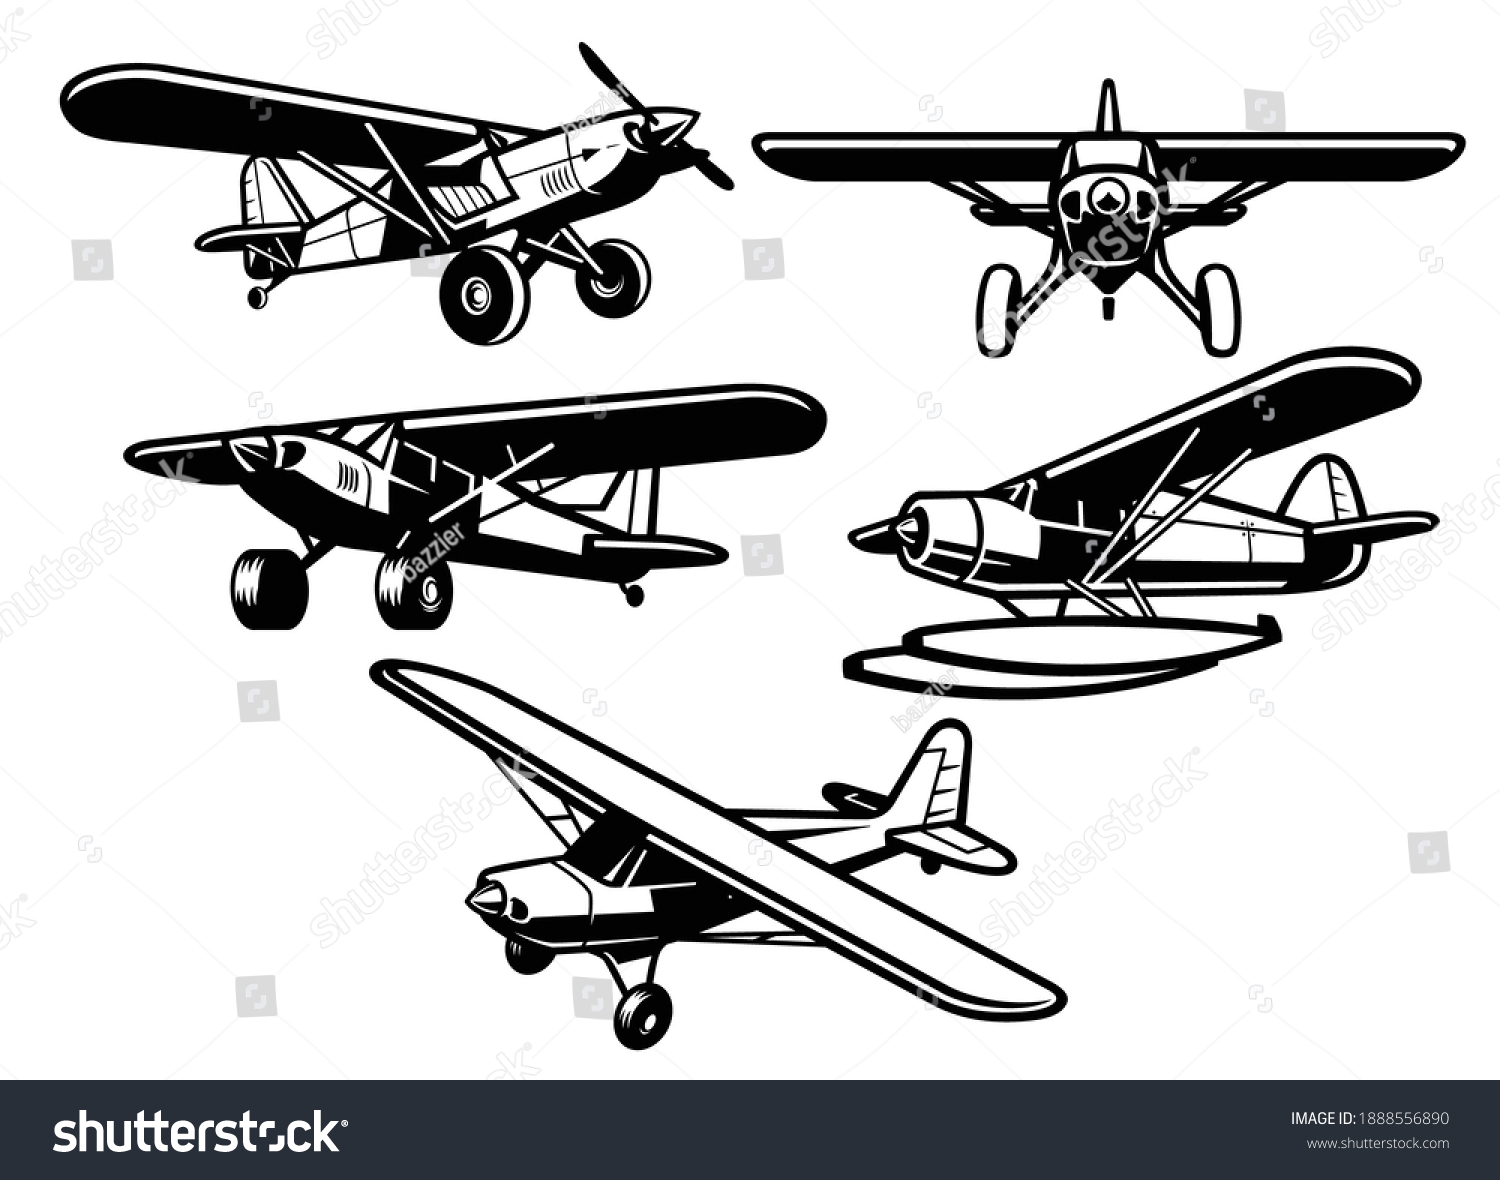 4,599 Bush planes Images, Stock Photos & Vectors | Shutterstock